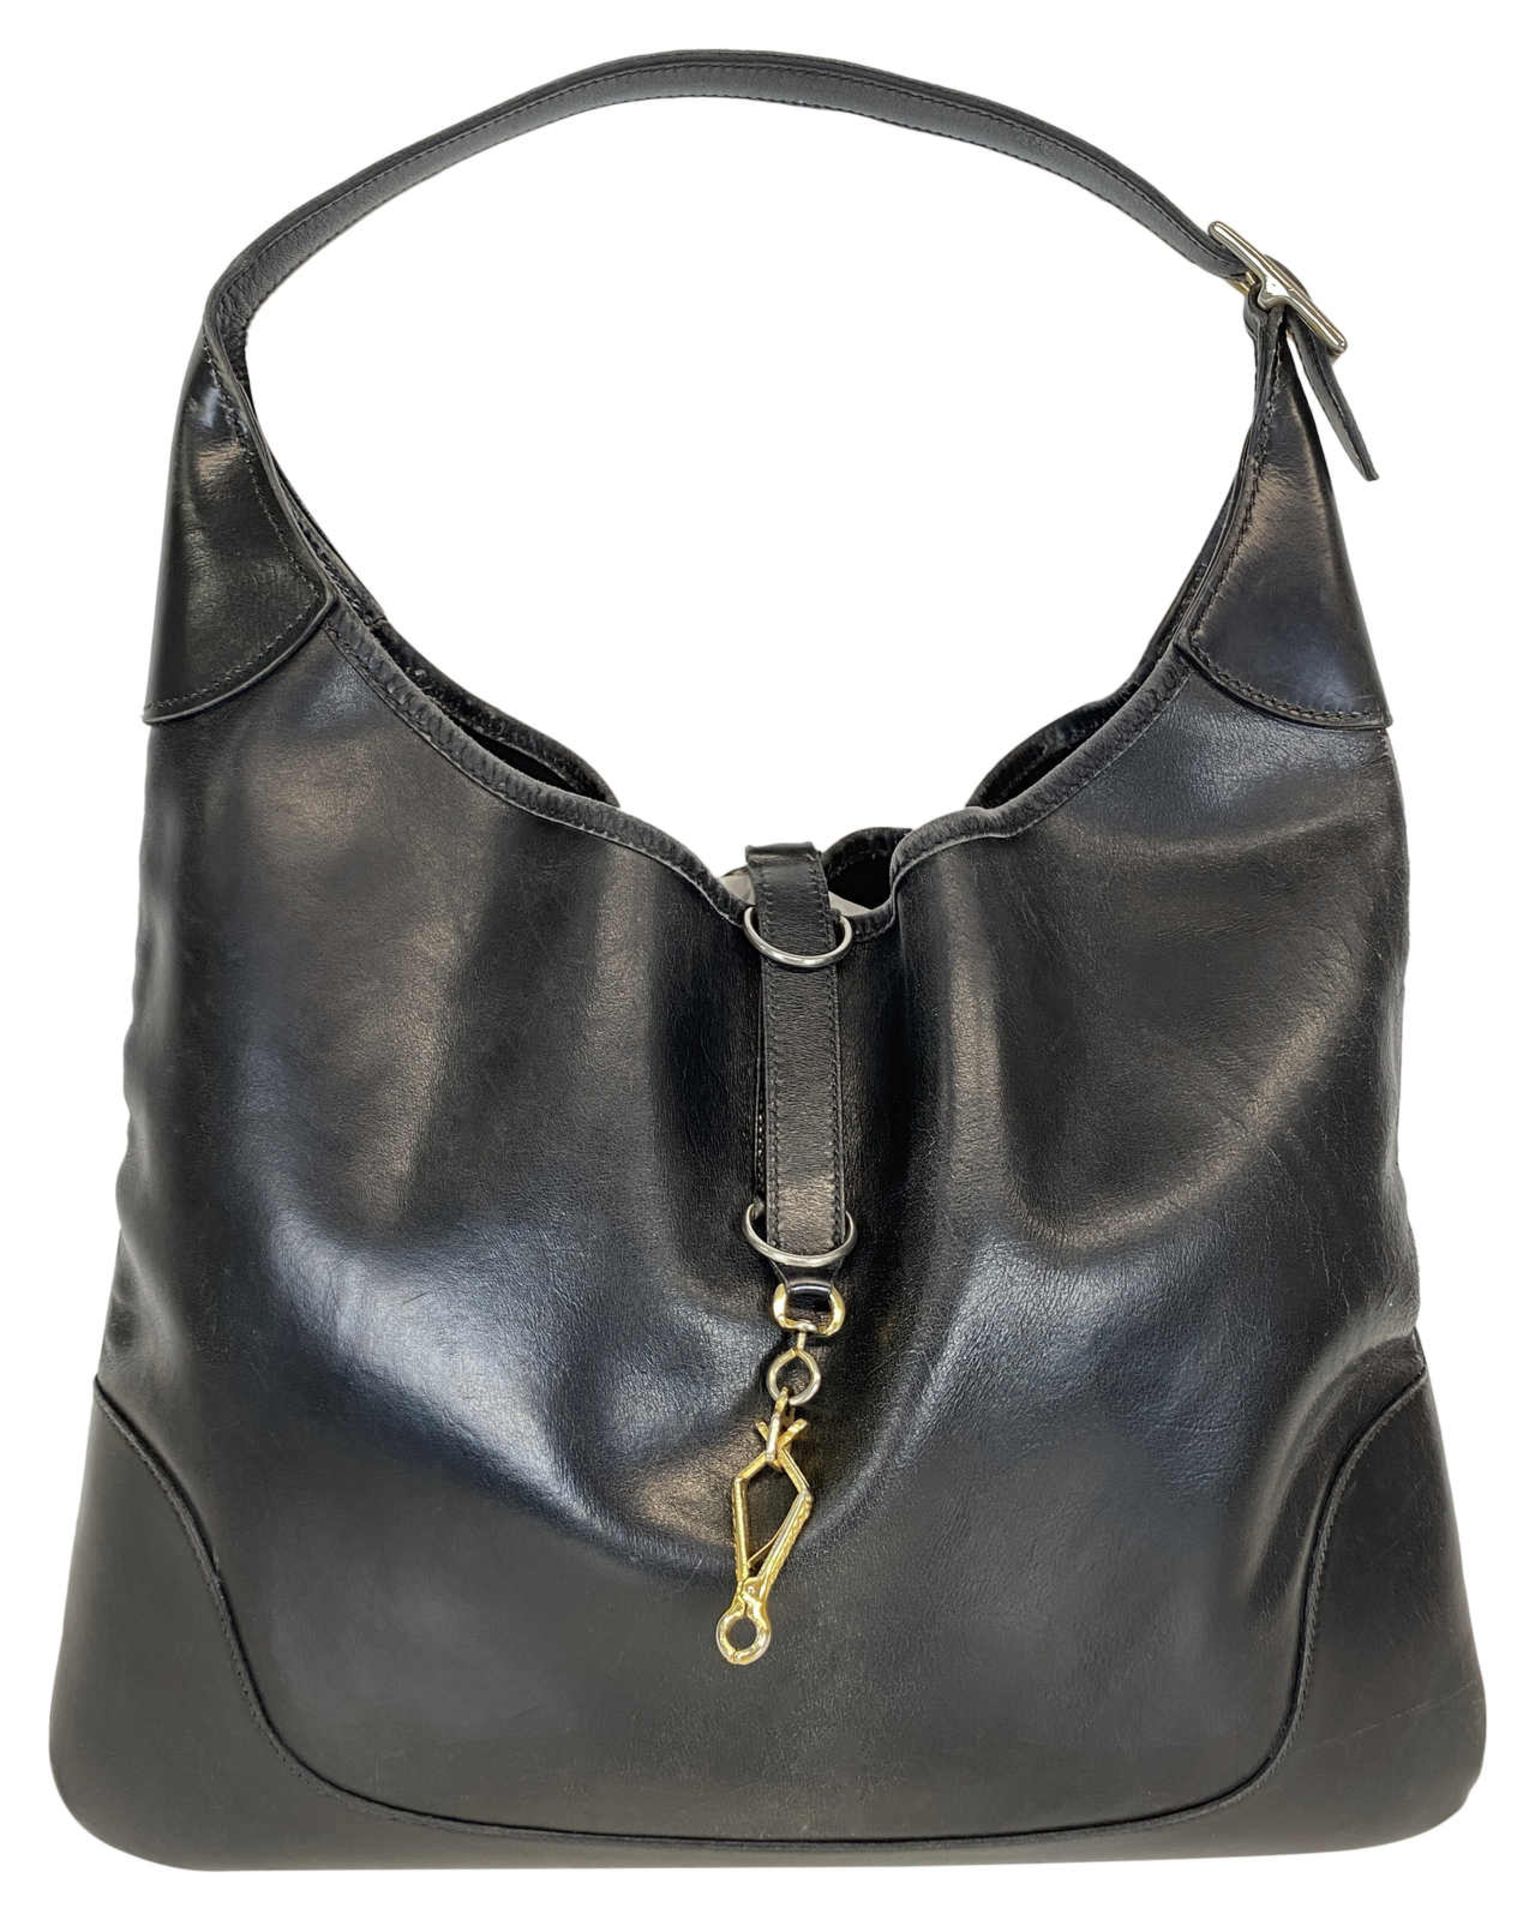 HERMÈS Handtasche Trim Handbag in schwarzem Leder aus dem Jahr 1971. Die 1958 entworfene und 2020